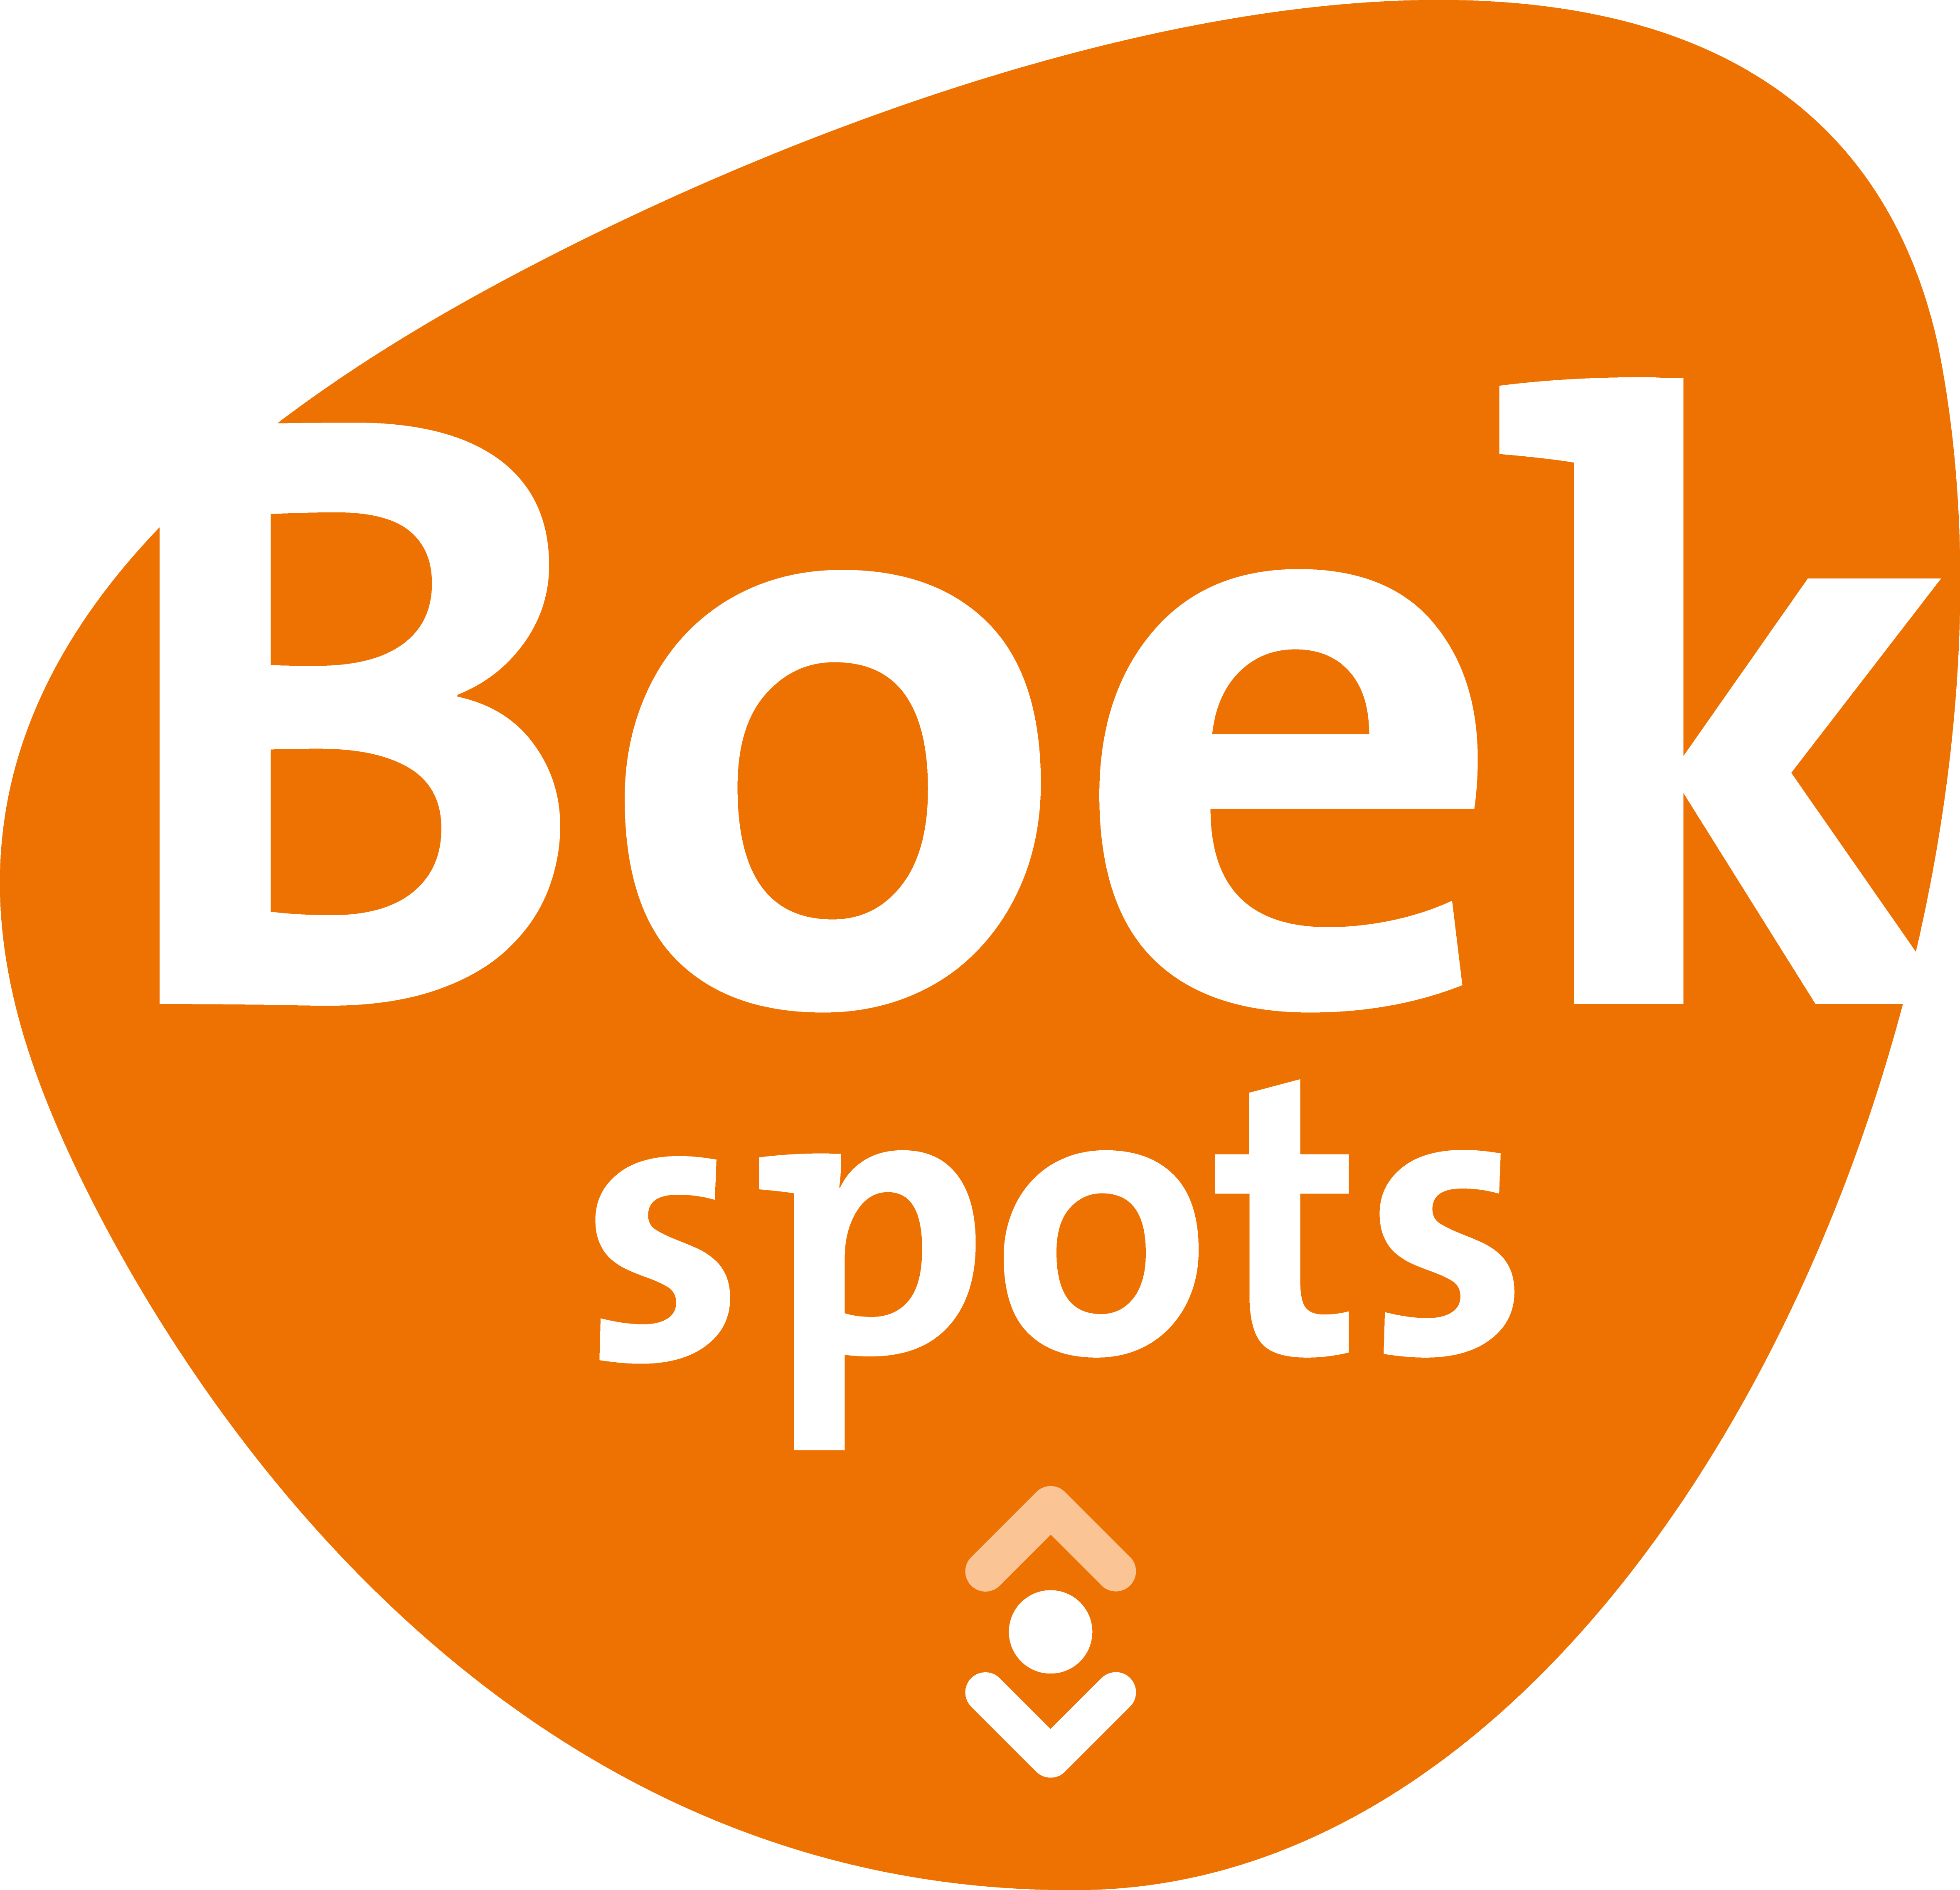 BoekSpots